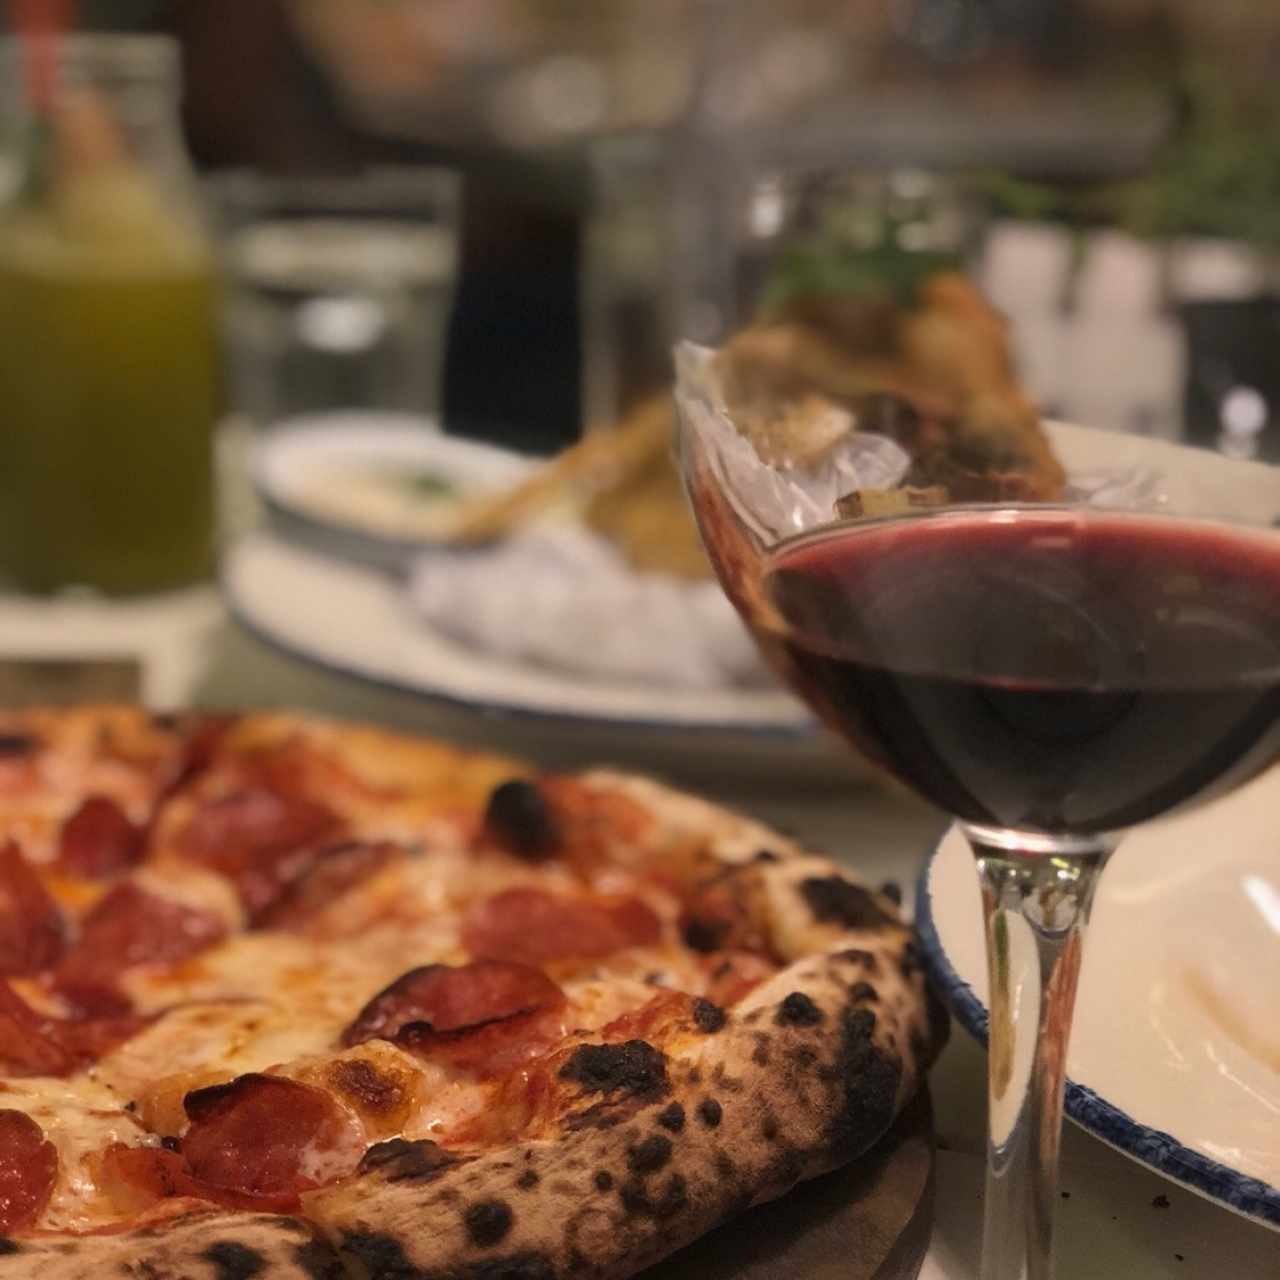 Pizza Americano Pepperoni, Mixto Fristo y una copa de vino Mezzacorona Cabernet Sauvignon